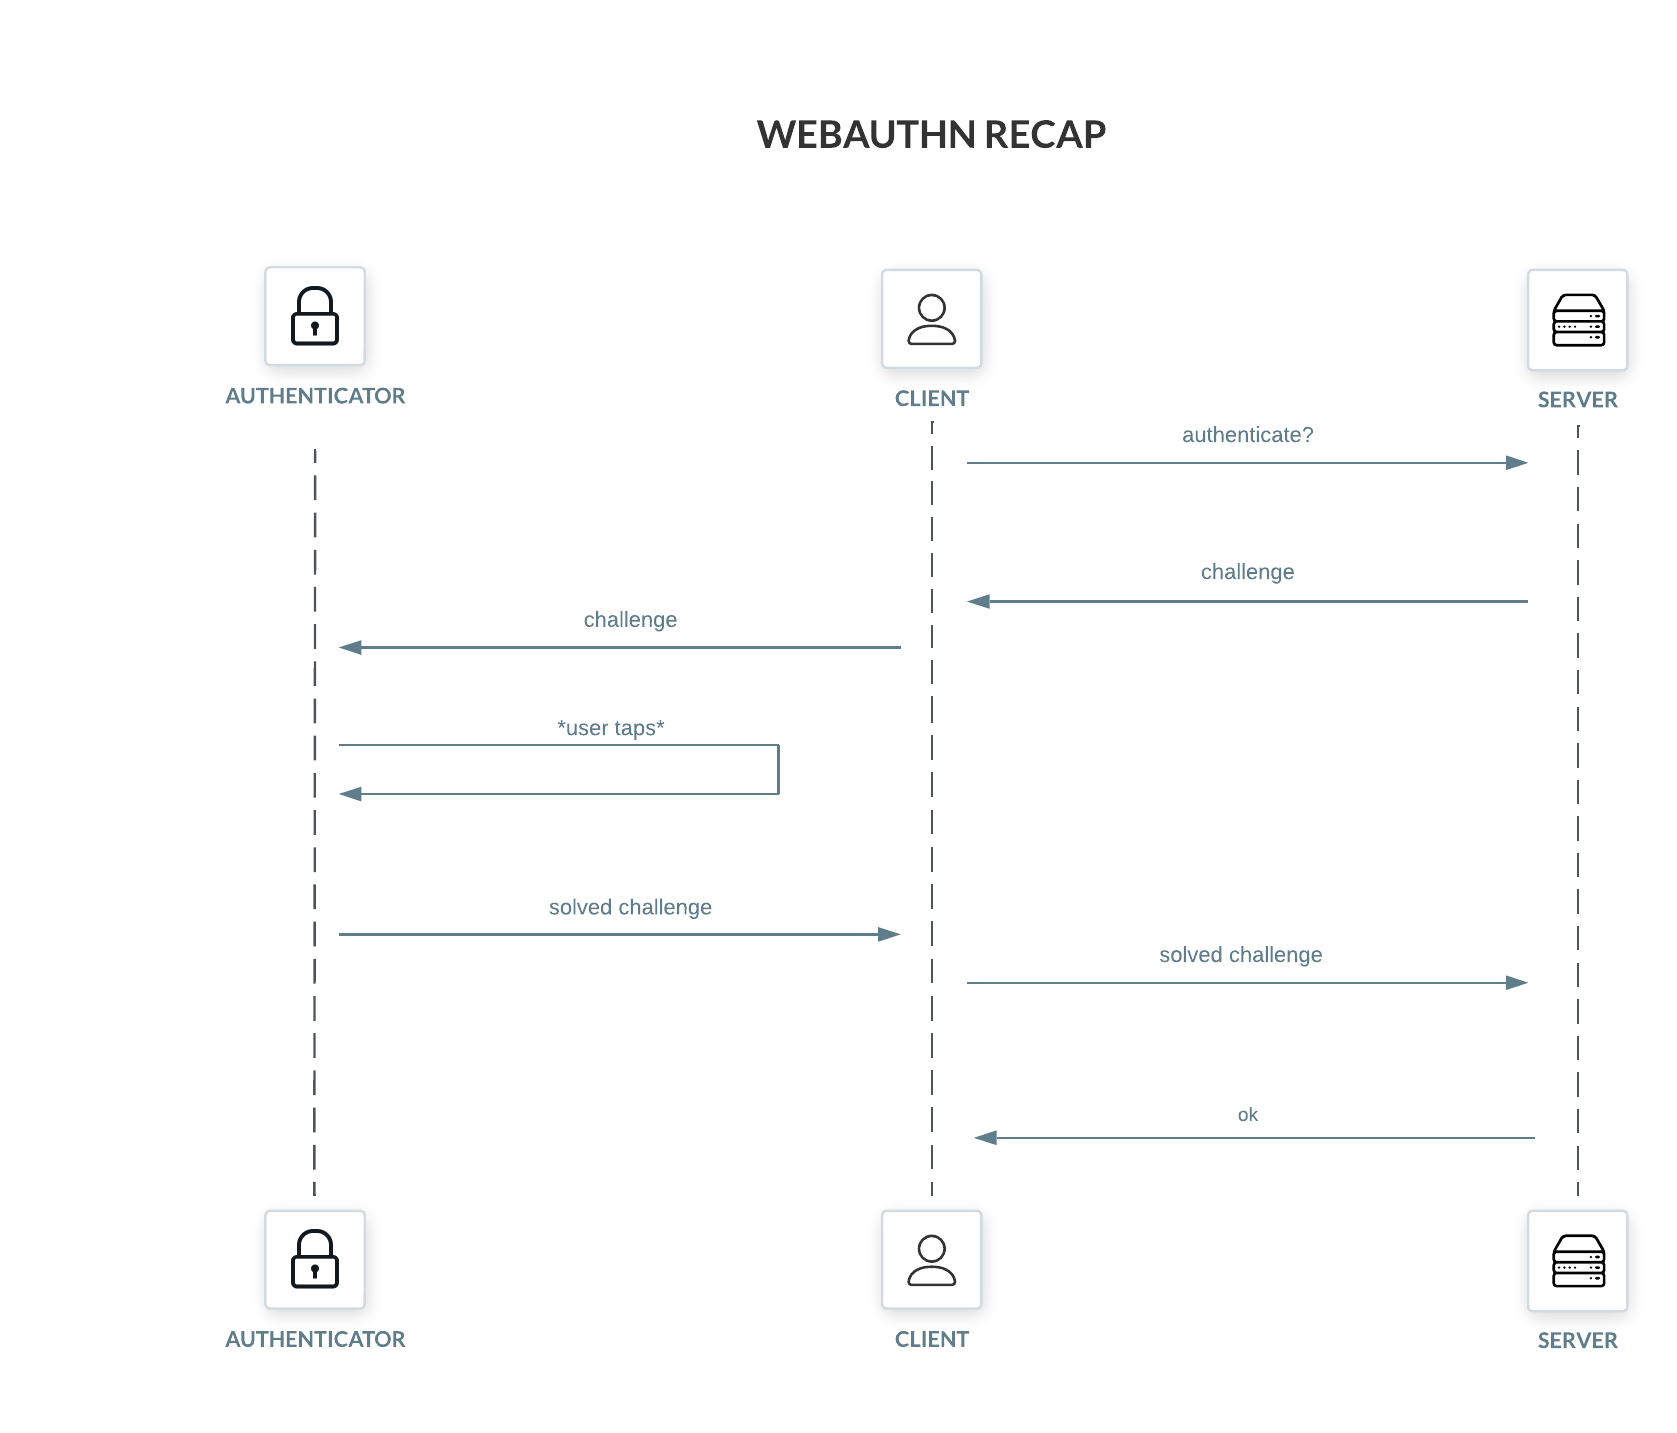 WebAuthn recap